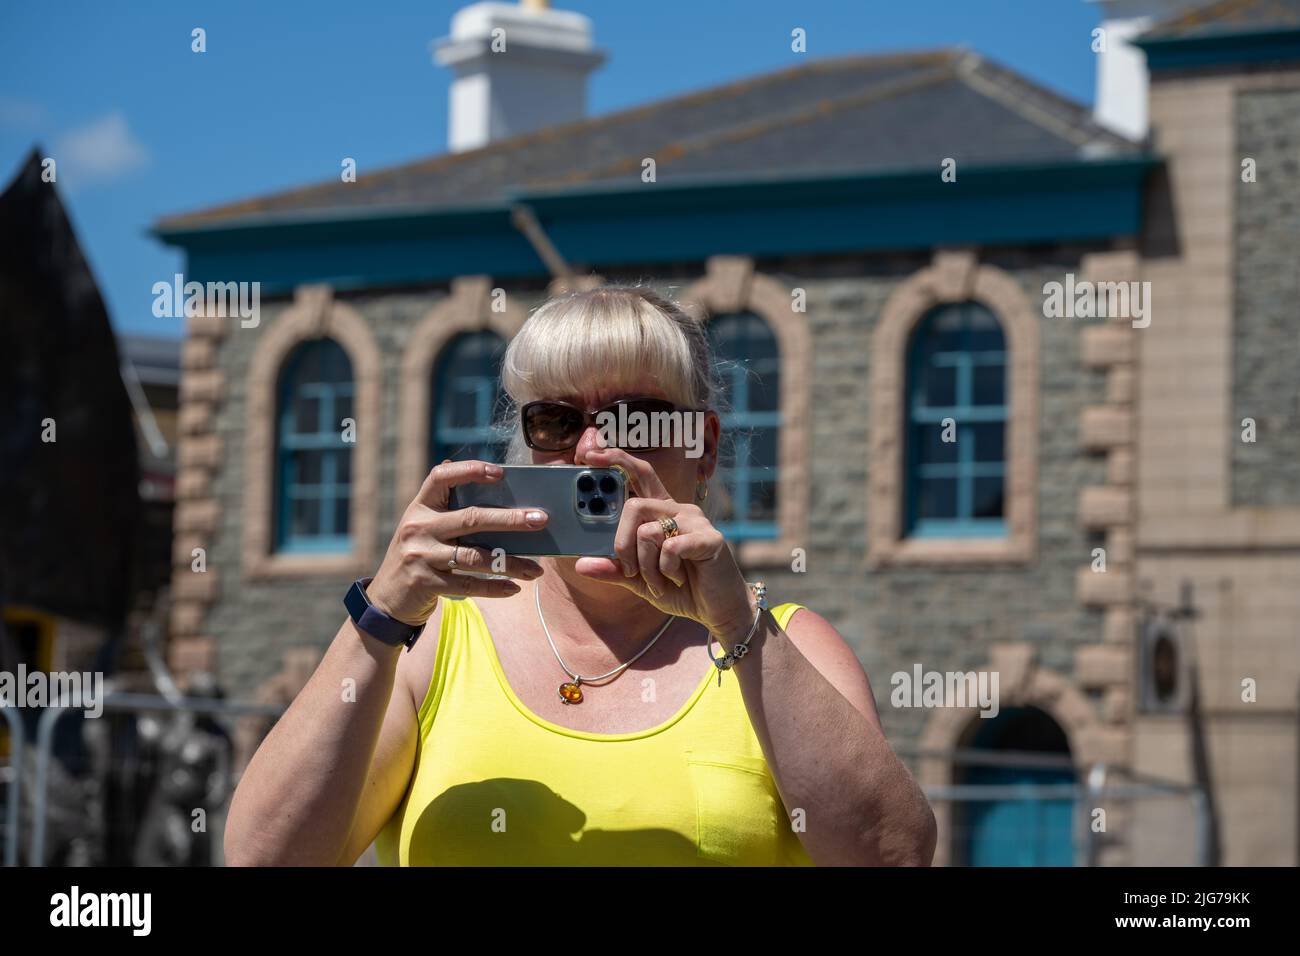 Turista adulta con gafas de sol y una parte superior amarilla tomando fotografías en un teléfono móvil durante sus vacaciones en verano. Foto de stock